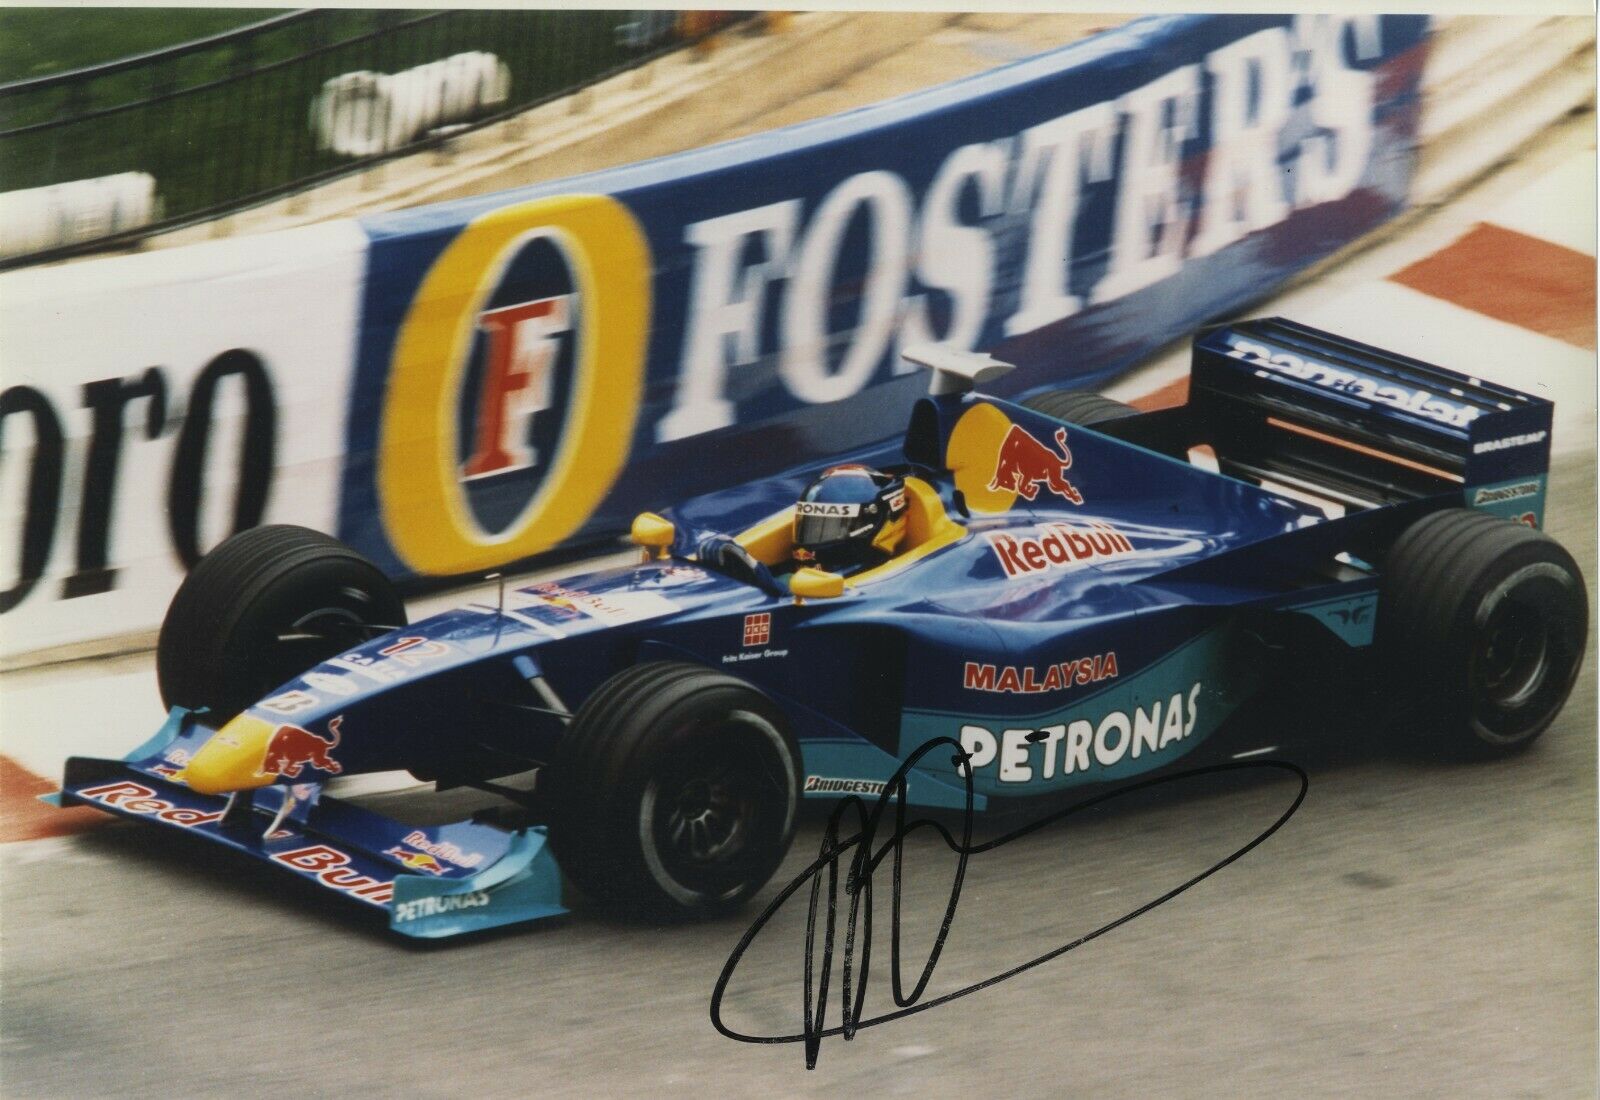 Pedro Diniz - Brazilian Formula 1 Driver - In Person Signed Photograph